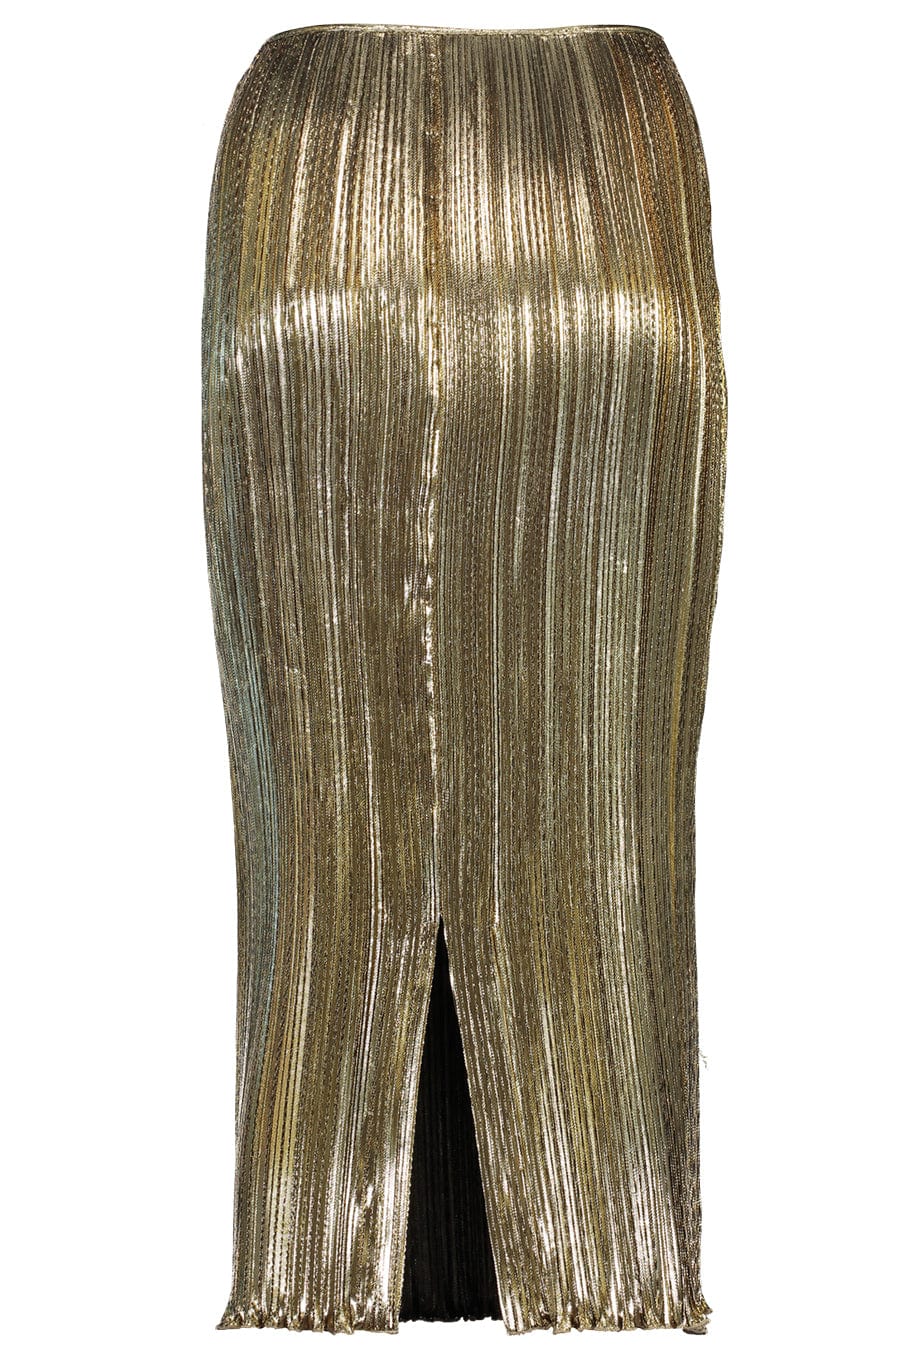 ALTUZARRA-Pandia Skirt-LIGHT GOLD